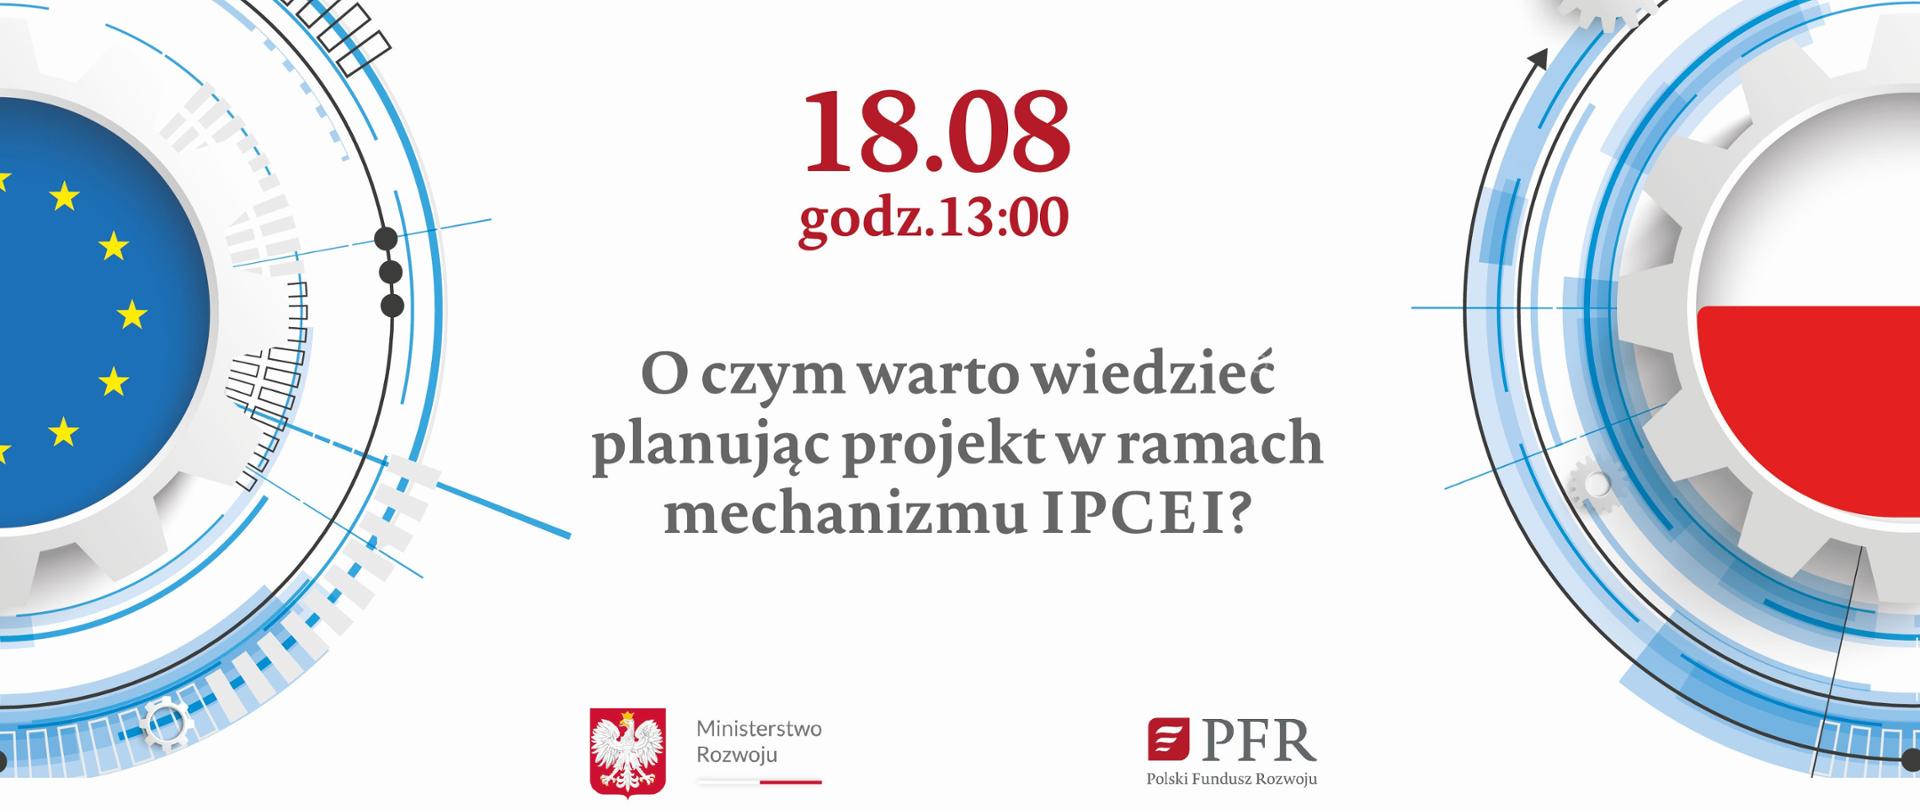 Grafika z napisem: 18.08, 13.00 Webinar "O czym warto wiedzieć, planując projekt w ramach mechanizmu IPCEI" i logo MR i PFR